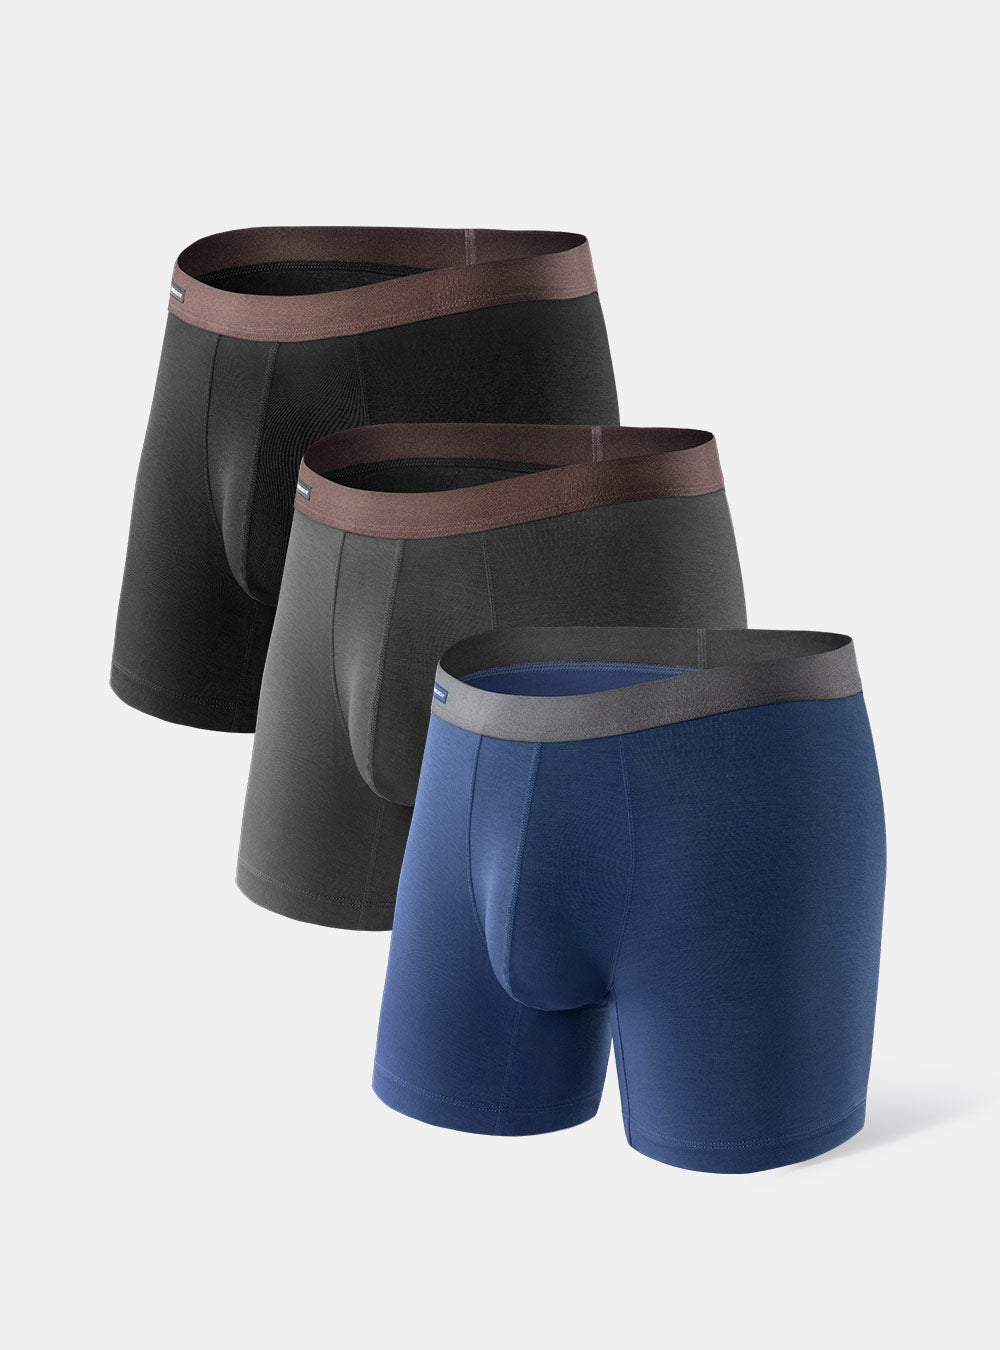 4 PACK For Men BambooWear Underwear Shorts Ice Silk Mesh Boxer